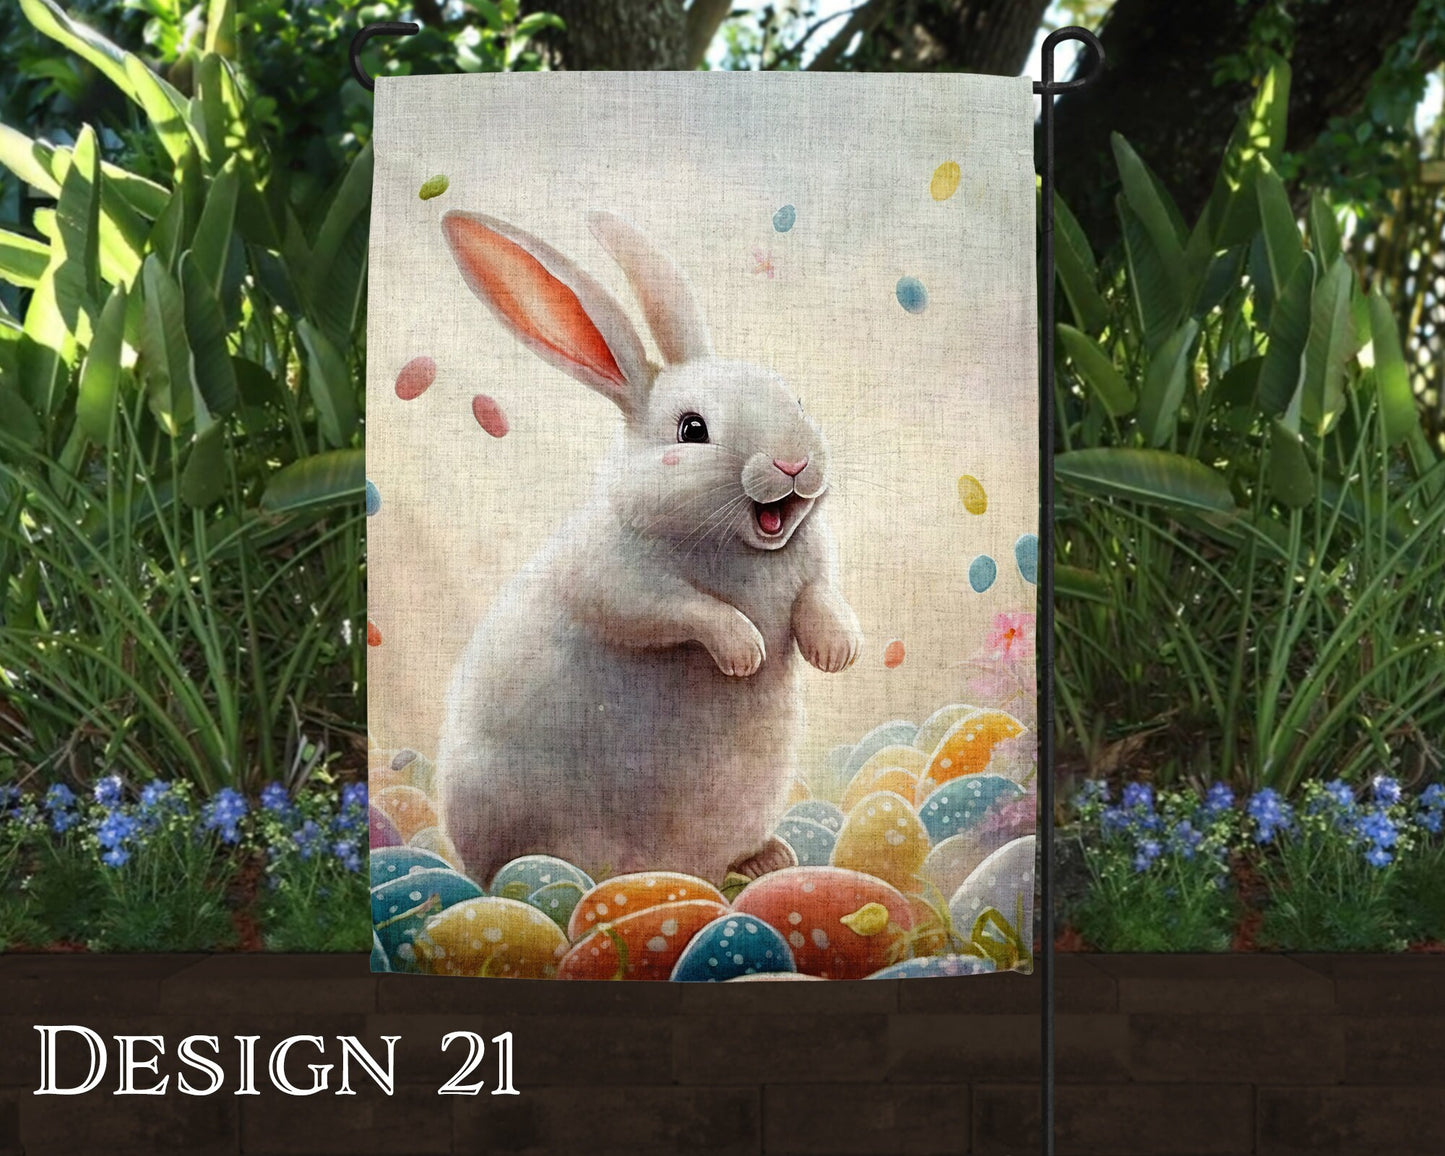 Watercolor Happy Easter Art Linen Garden Flag  - 8 Design Choices - Batch 3